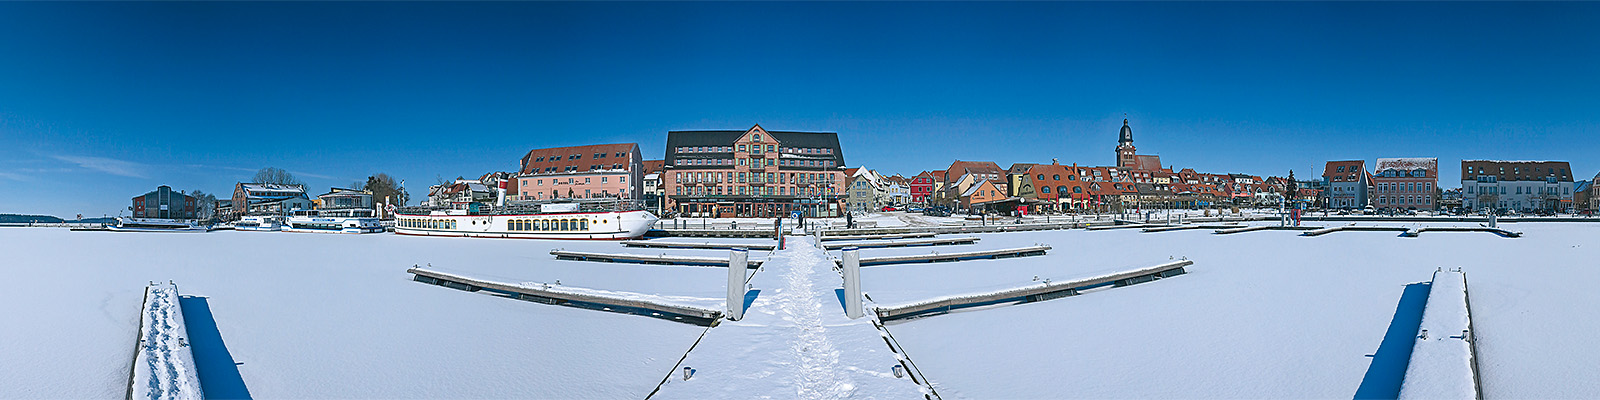 Motiv: Warener Hafen im Schnee - Motivnummer: wei-war-02